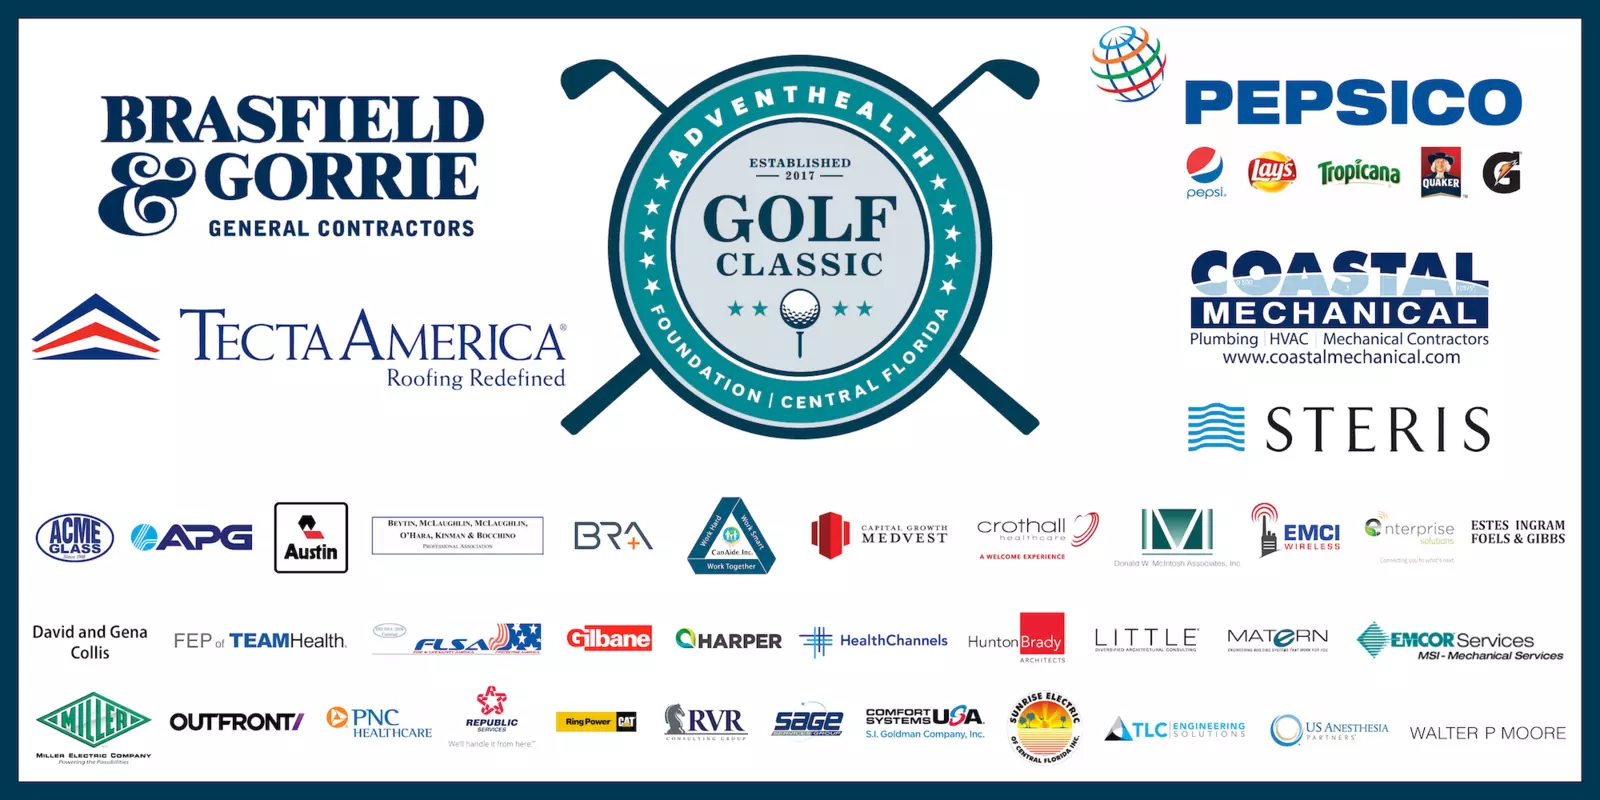 Golf Classic Sponsors